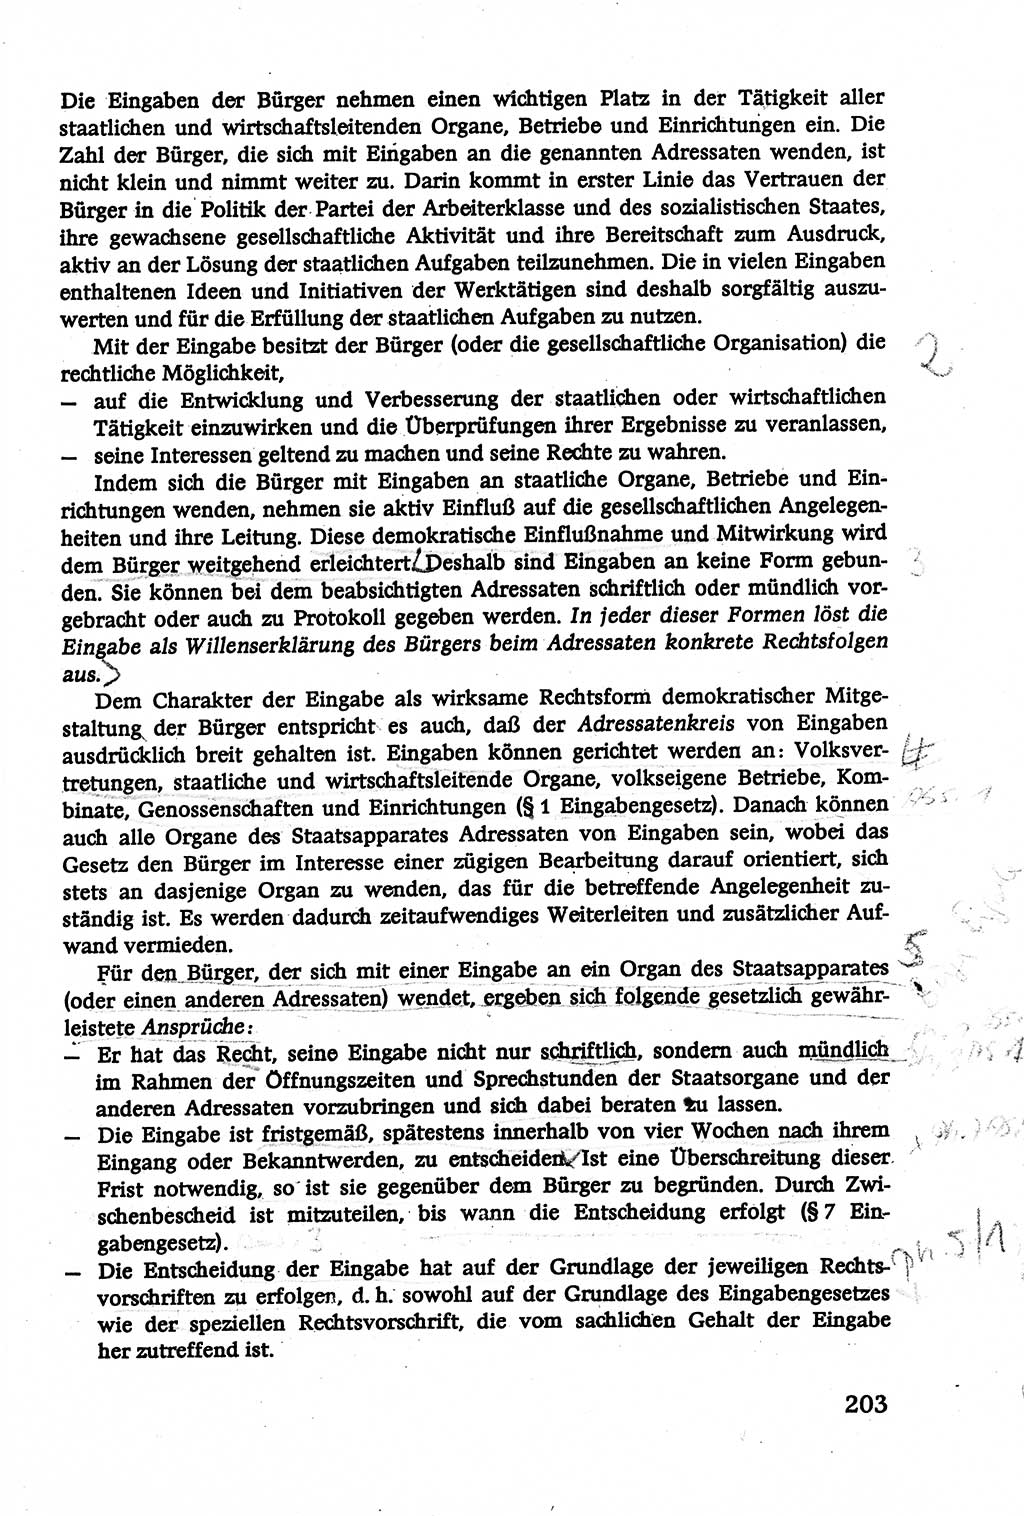 Verwaltungsrecht [Deutsche Demokratische Republik (DDR)], Lehrbuch 1979, Seite 203 (Verw.-R. DDR Lb. 1979, S. 203)